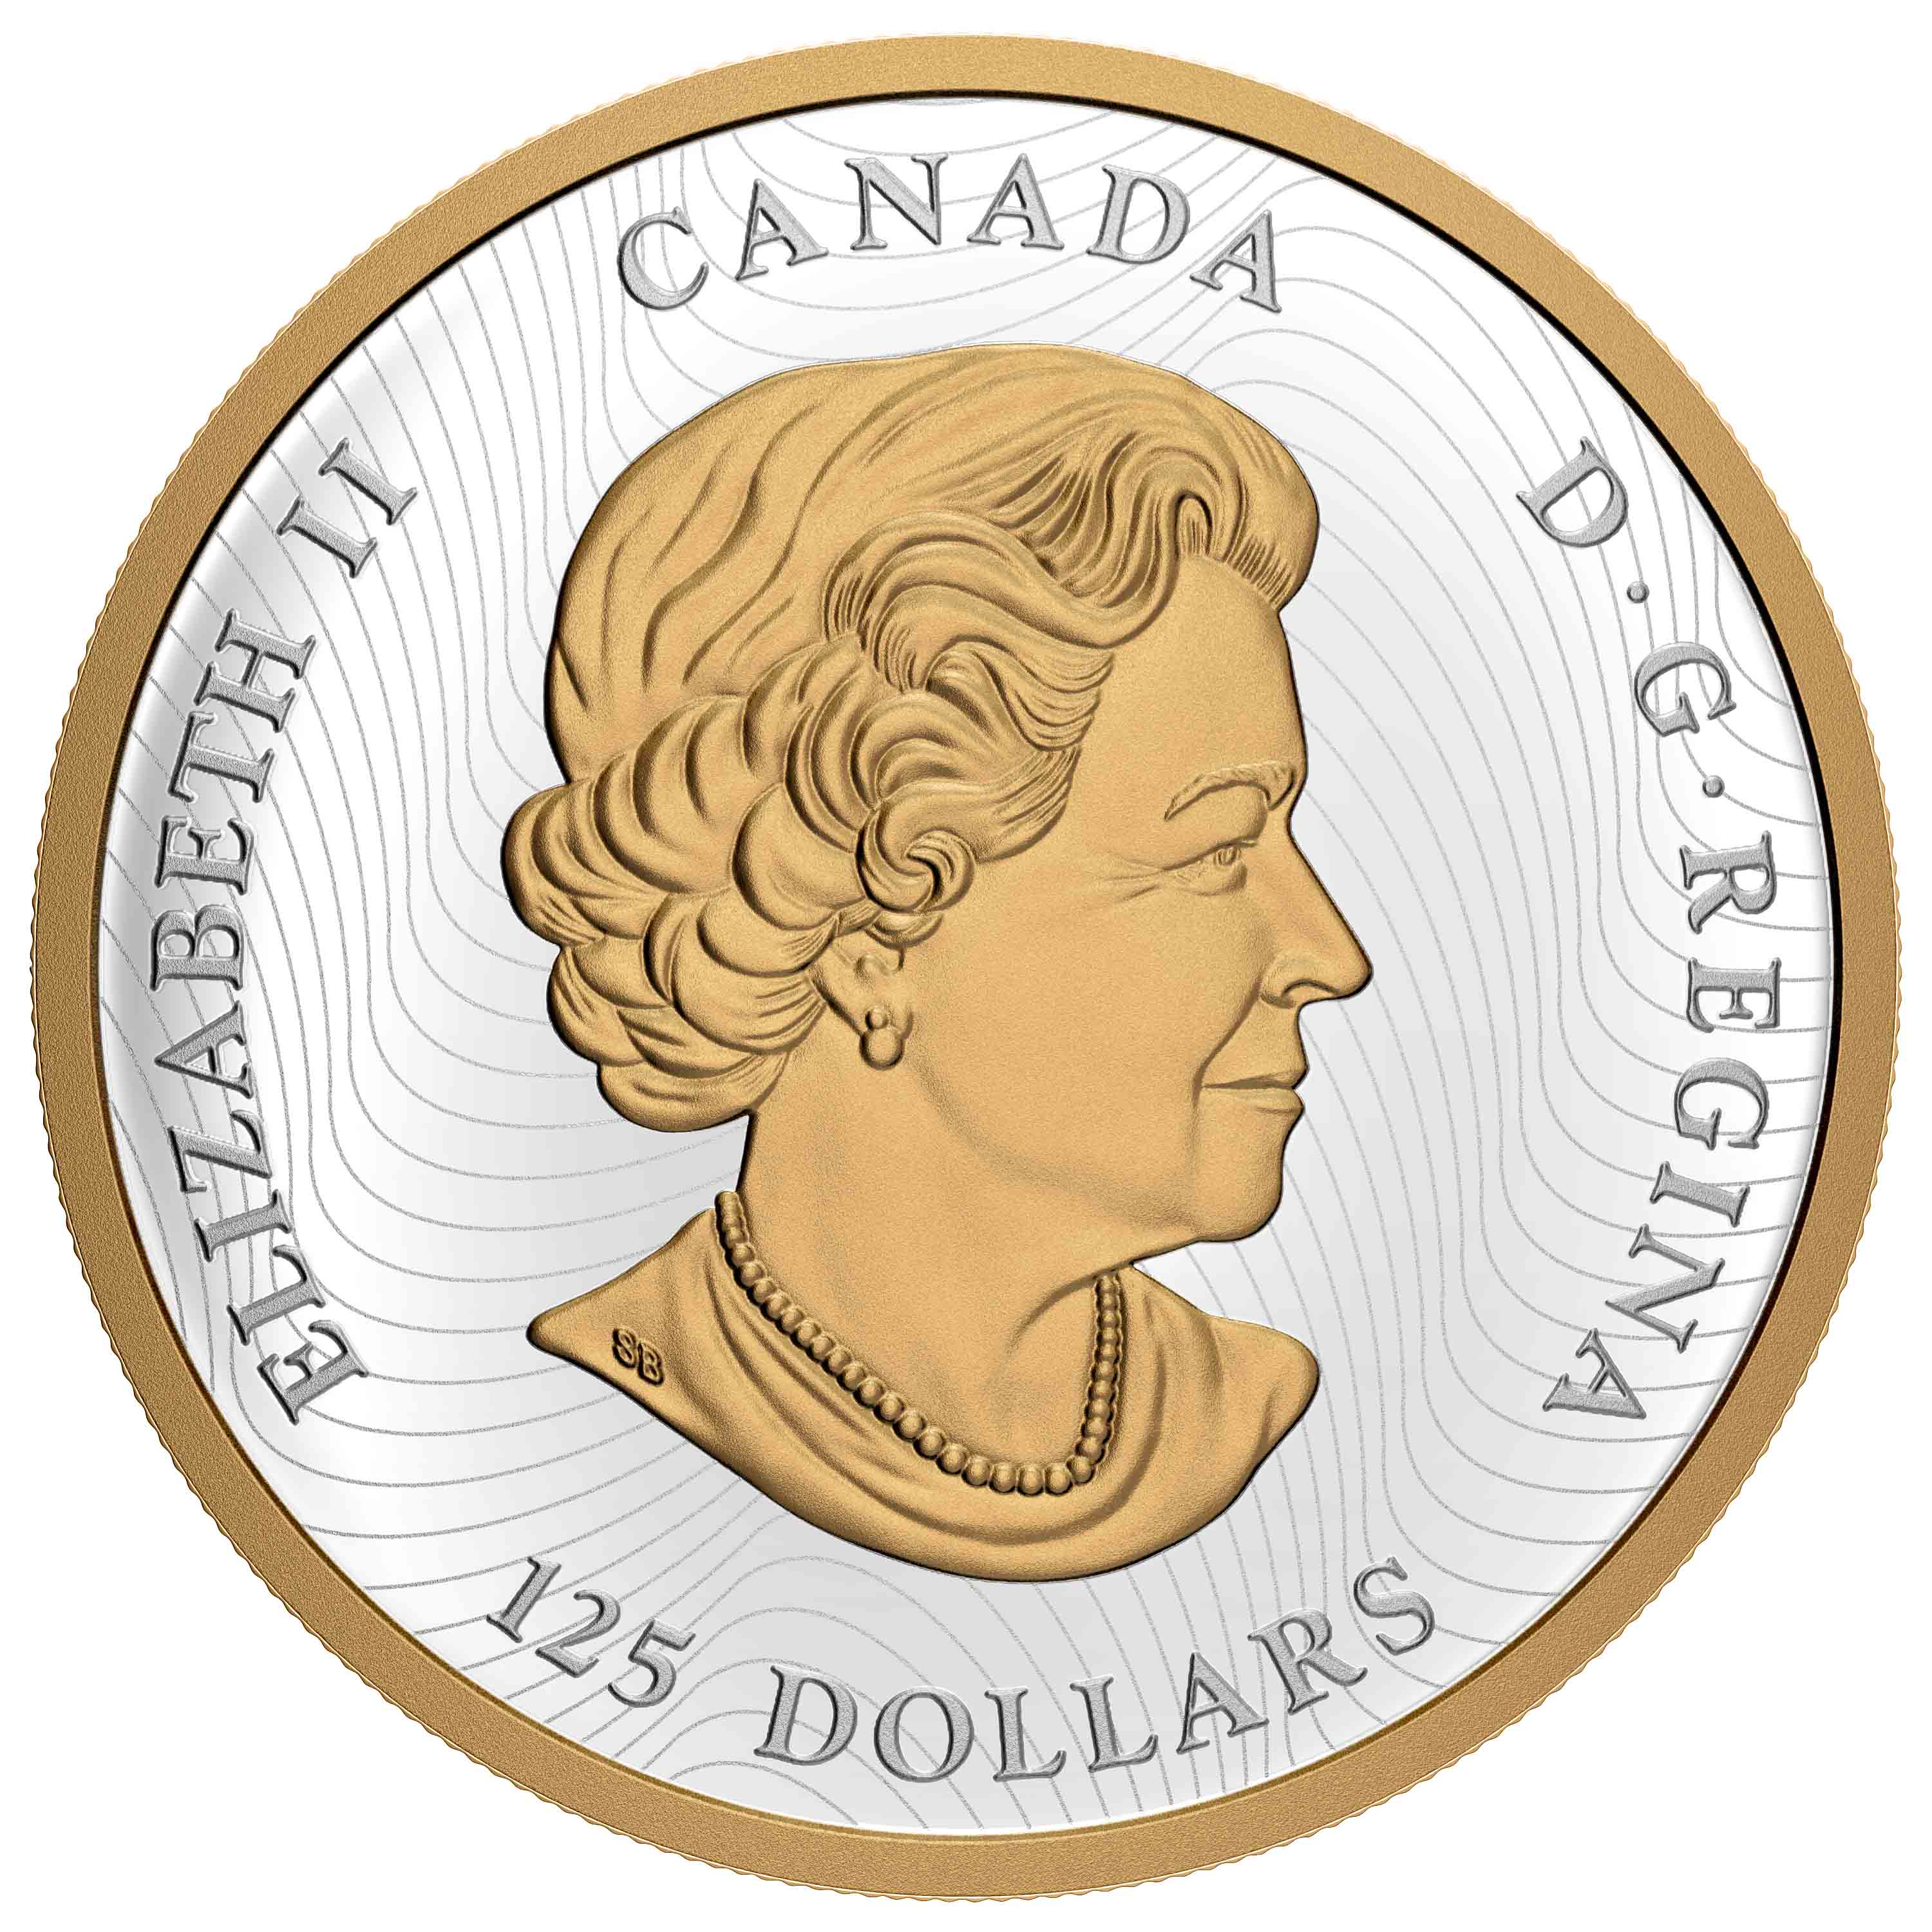 LUCKY DRAGON 1/2 Kilo Silver Coin $125 Canada 2020